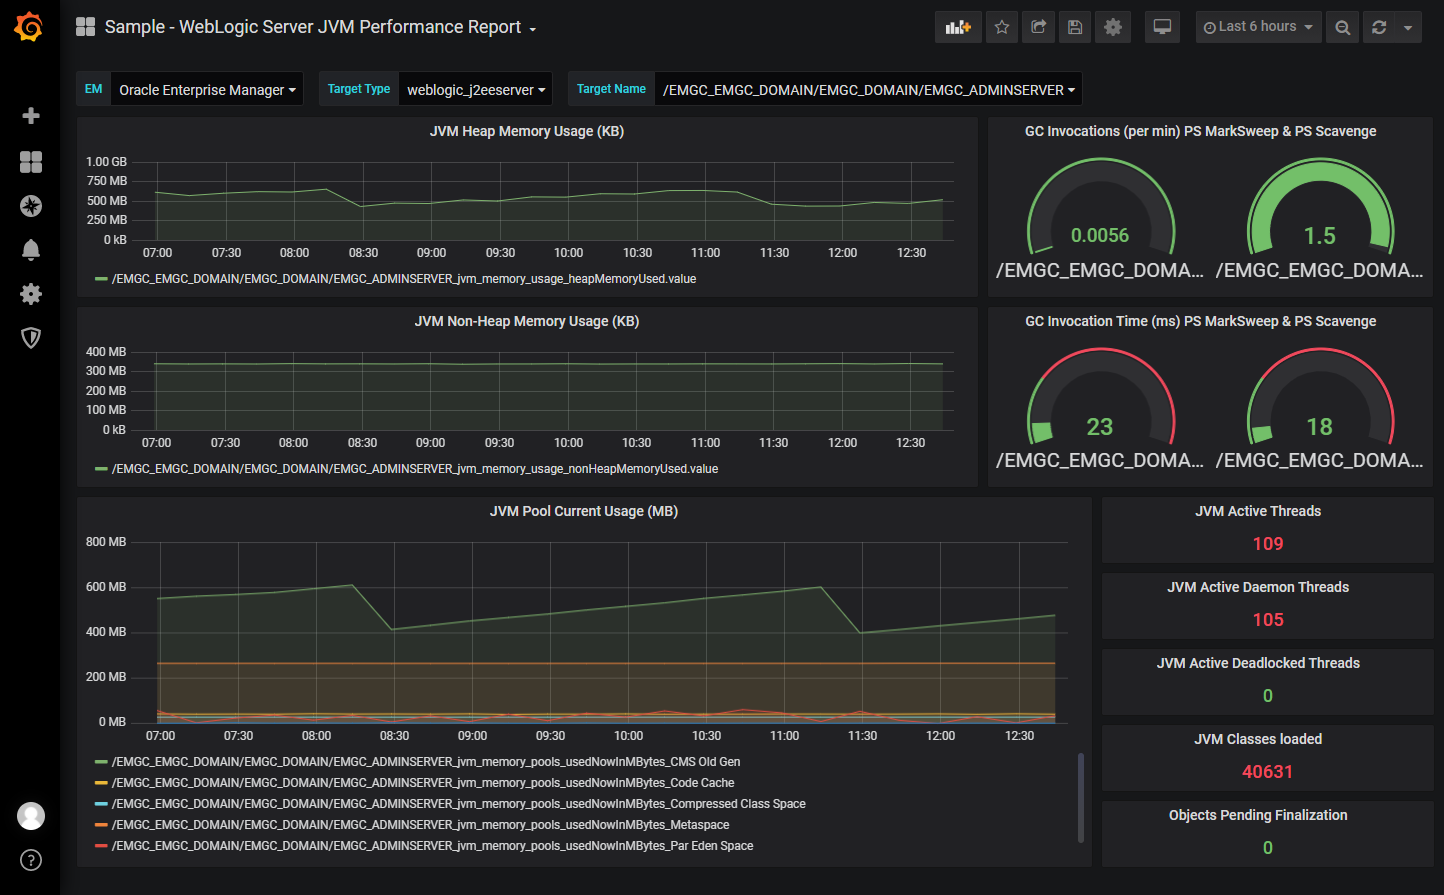 Image shows the WebLogic Server JVM Performance dashboard.